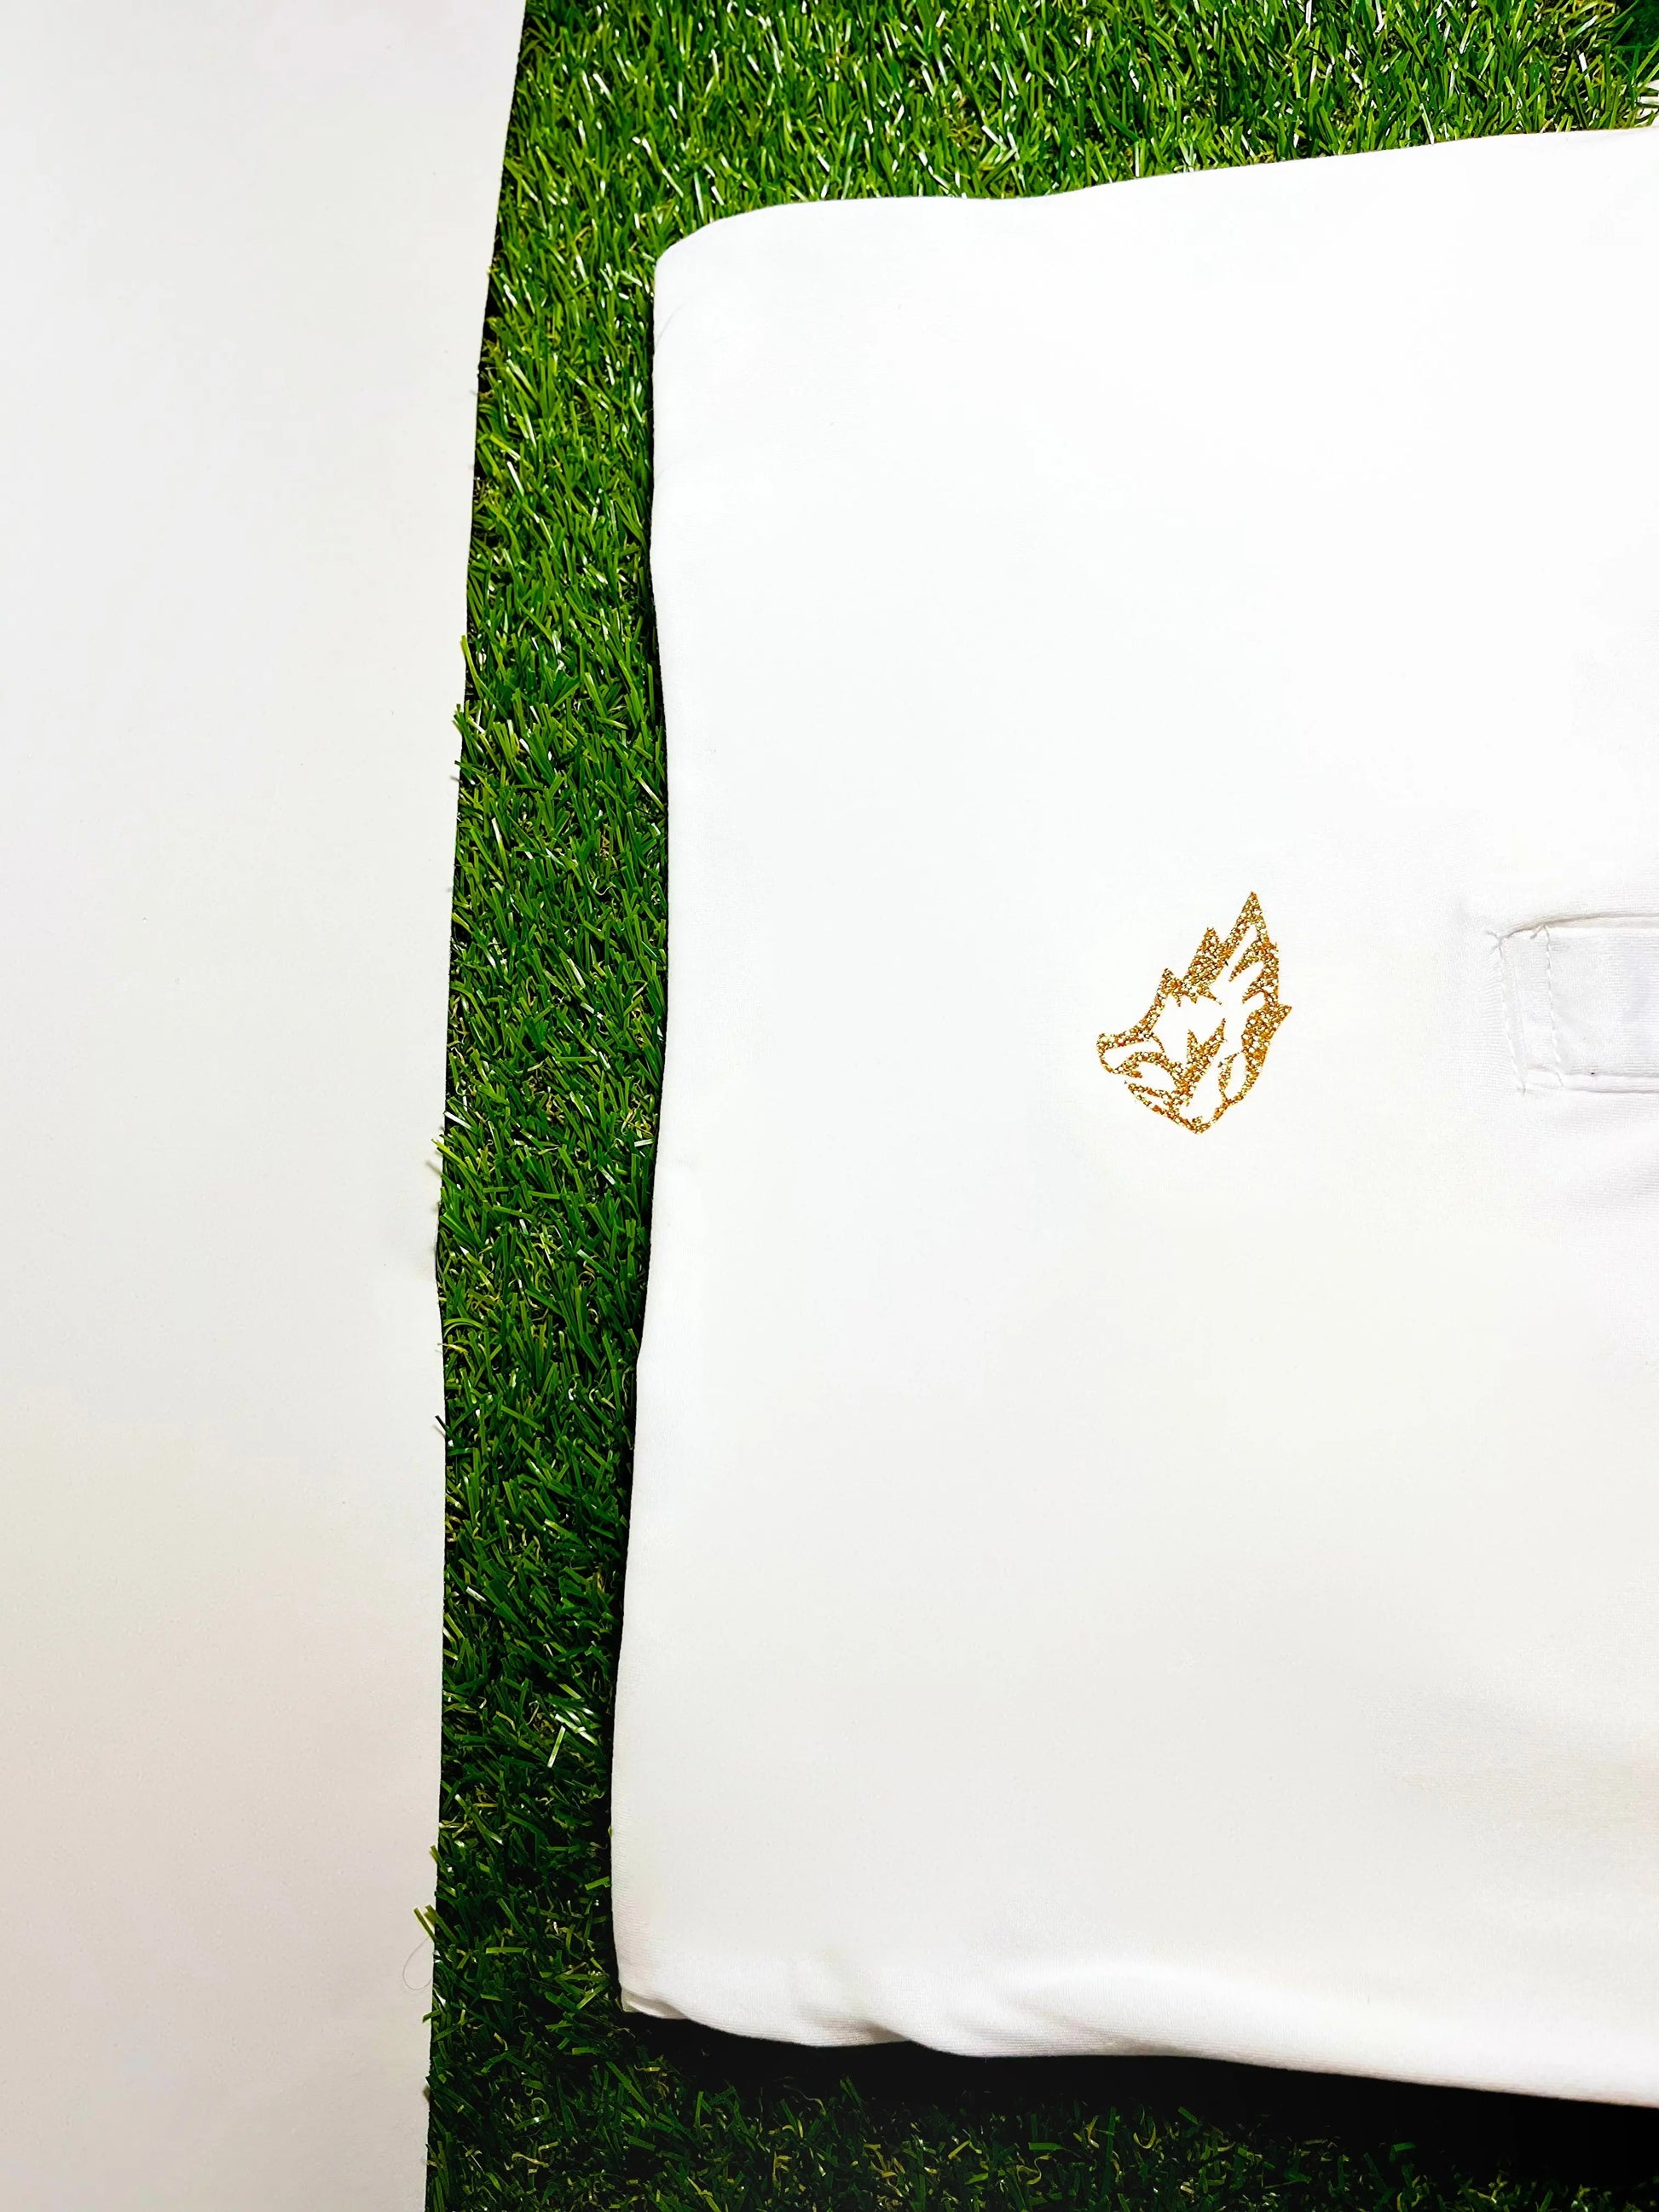 SABRHERO Heritage Champion Polo Shirt - luxury tennis apparel Shirts and t shirts SABRHERO